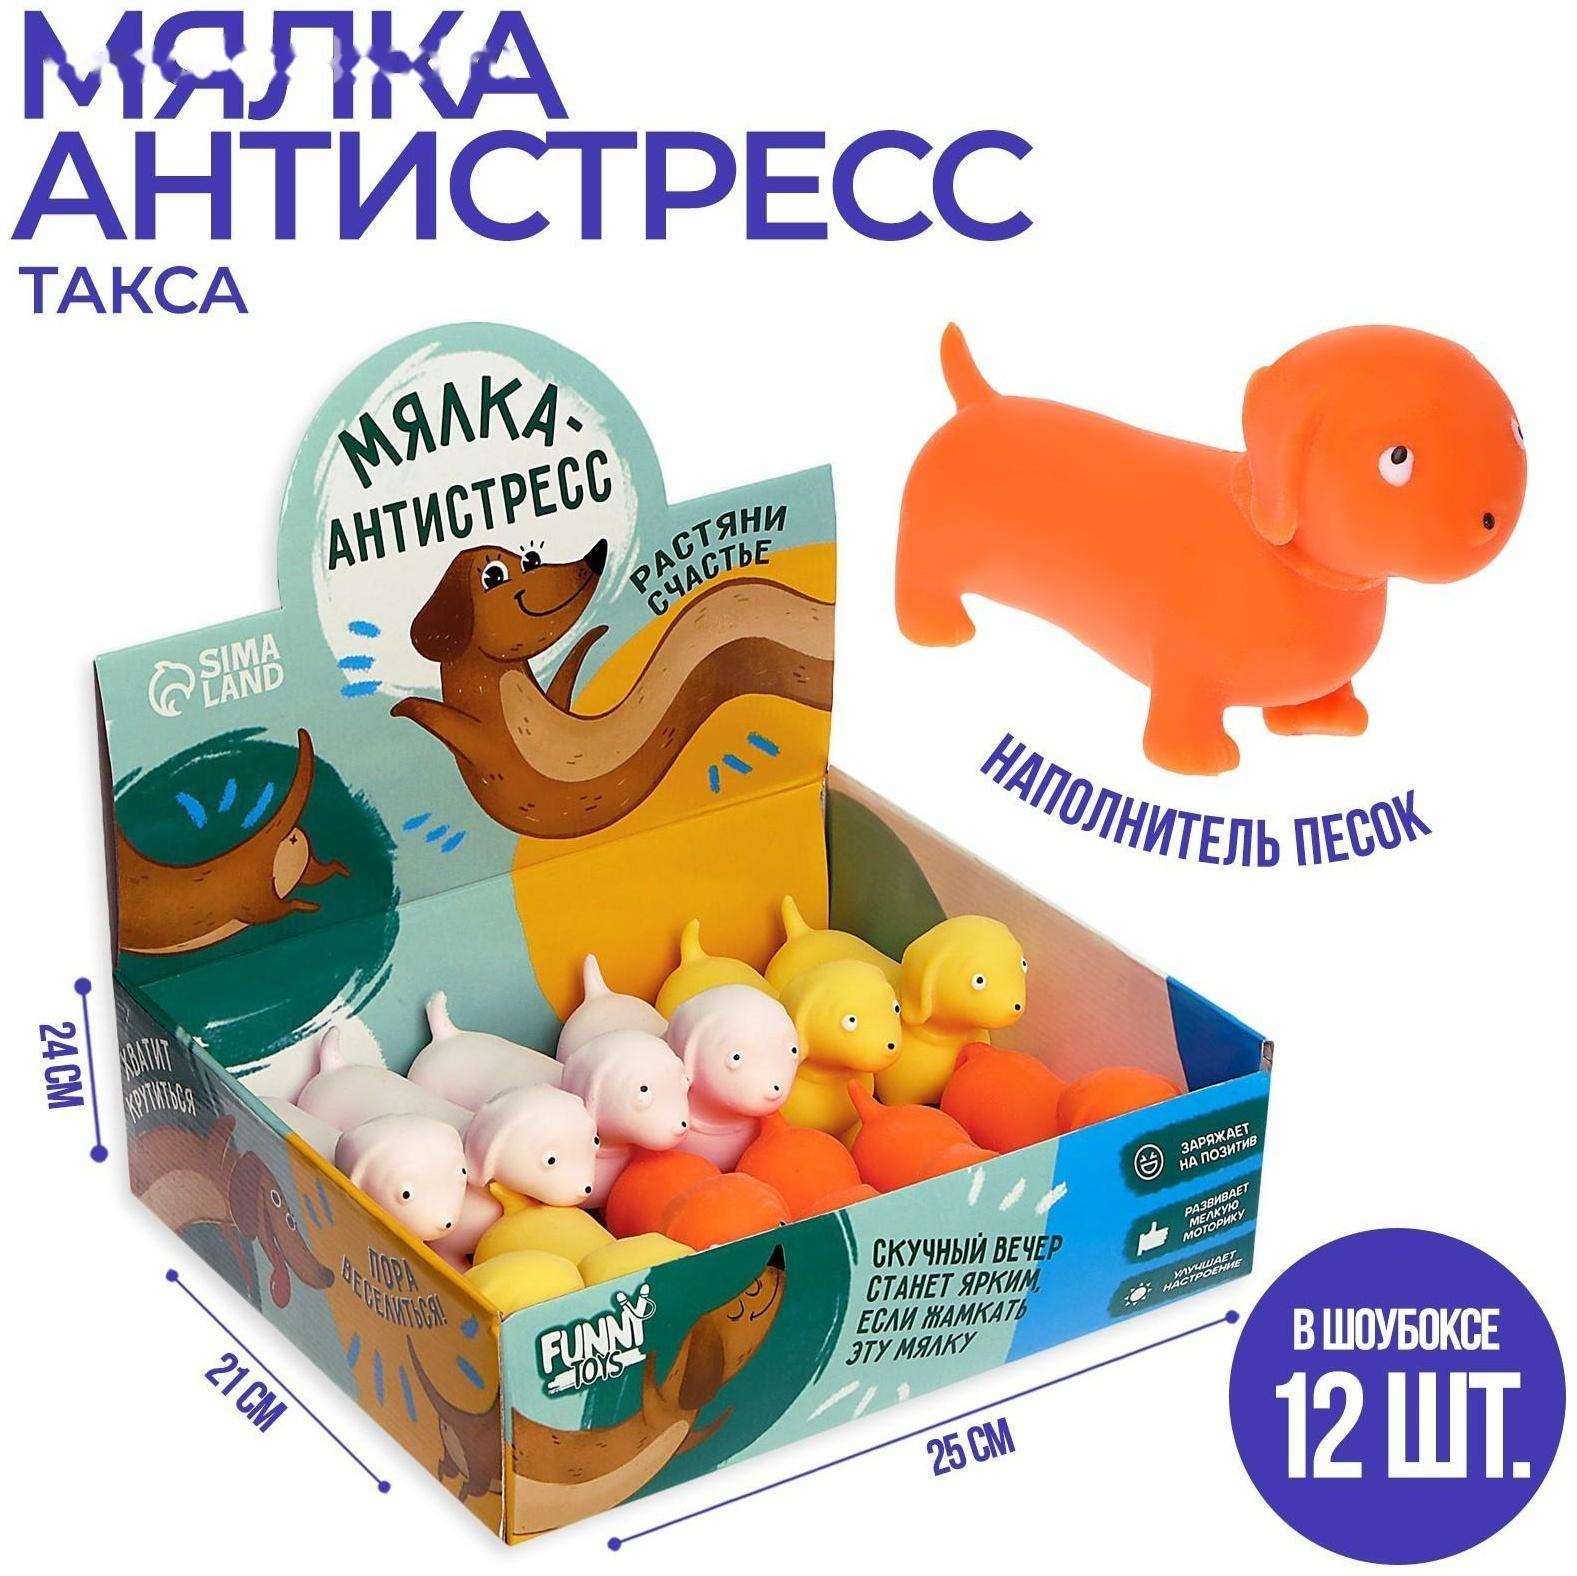 Мялка-антистресс Такса, цвета микс, 1 шт., 9079395